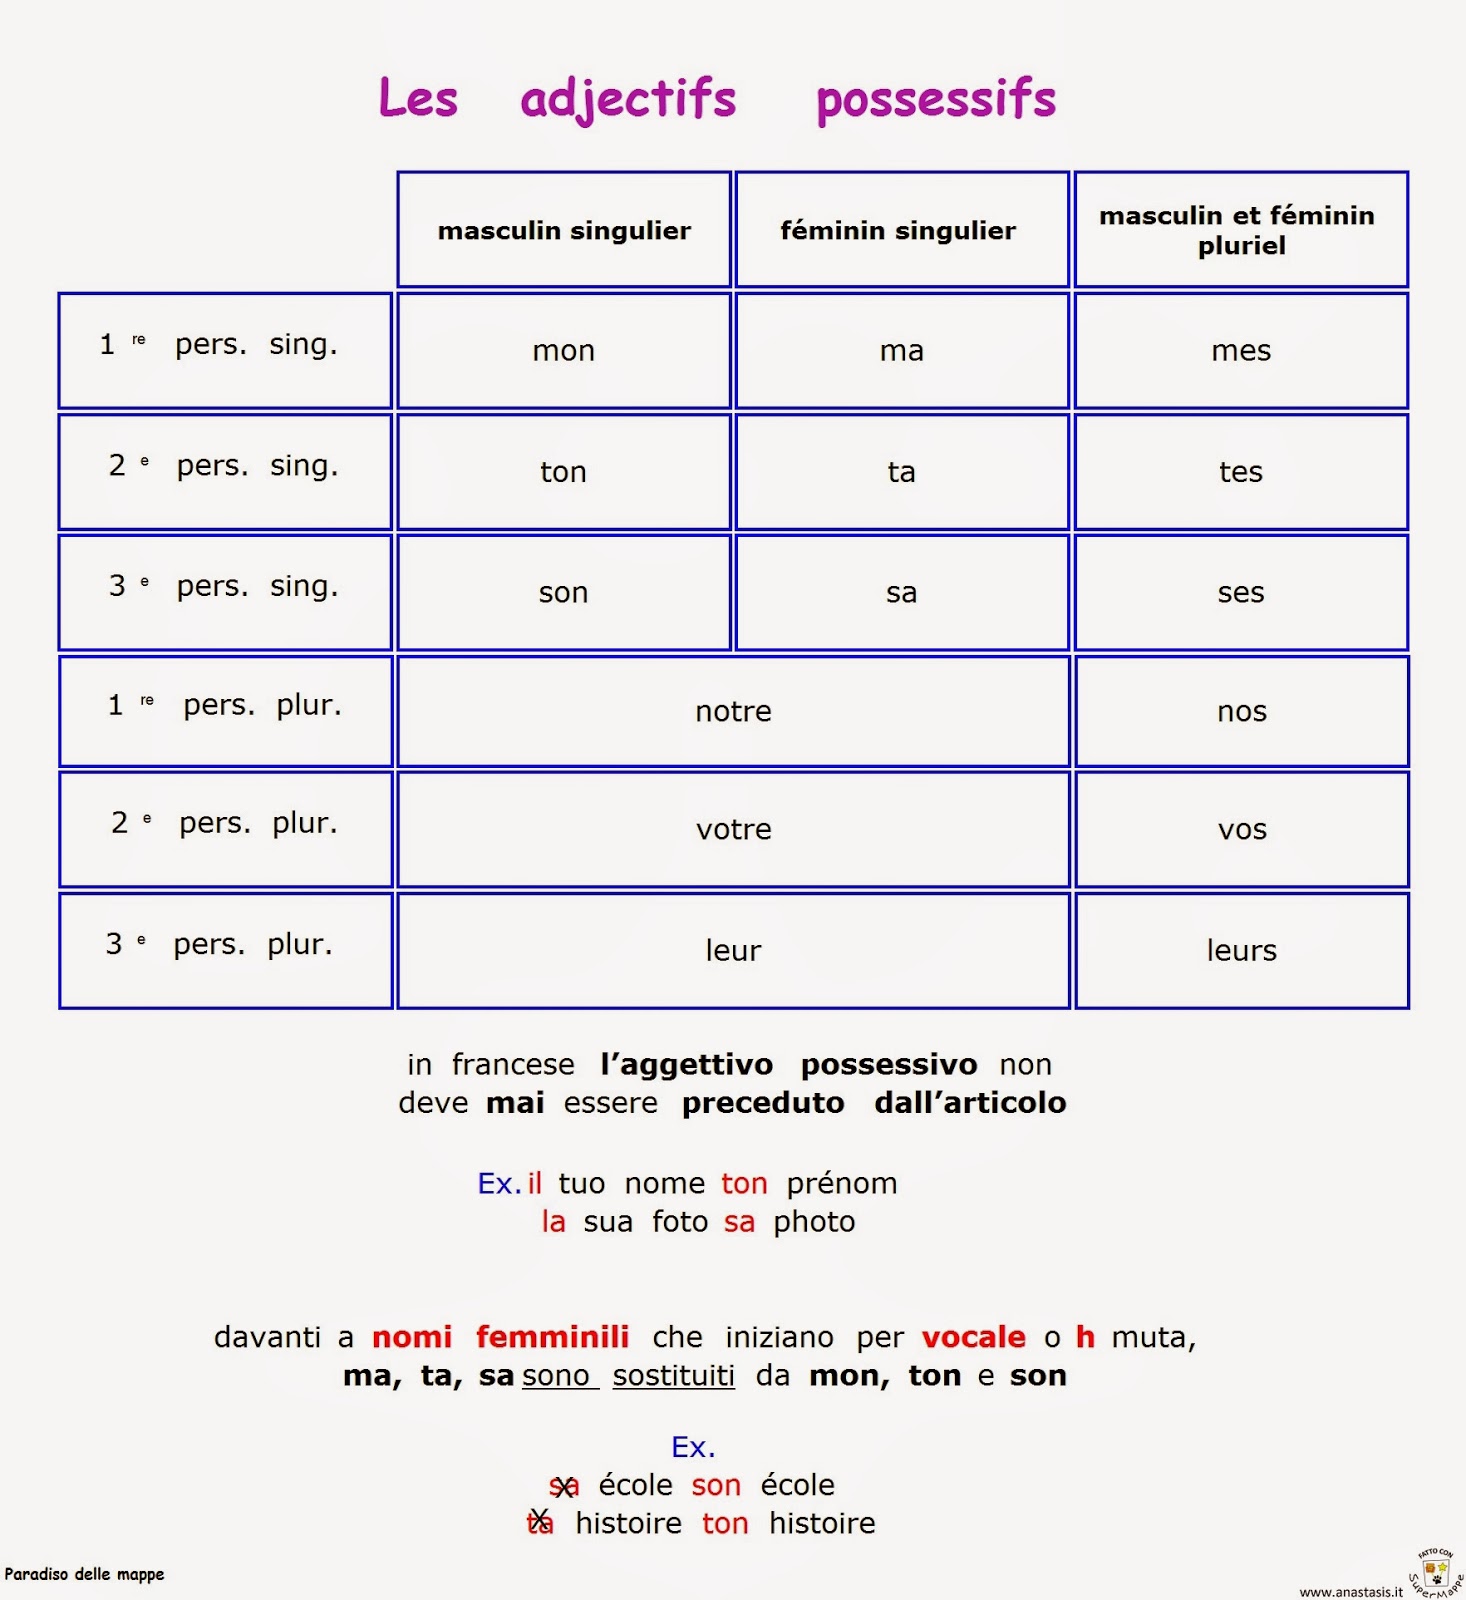 Aggettivi possessivi. Lezioni di francese, Grammatica francese jpg (1466x1600)